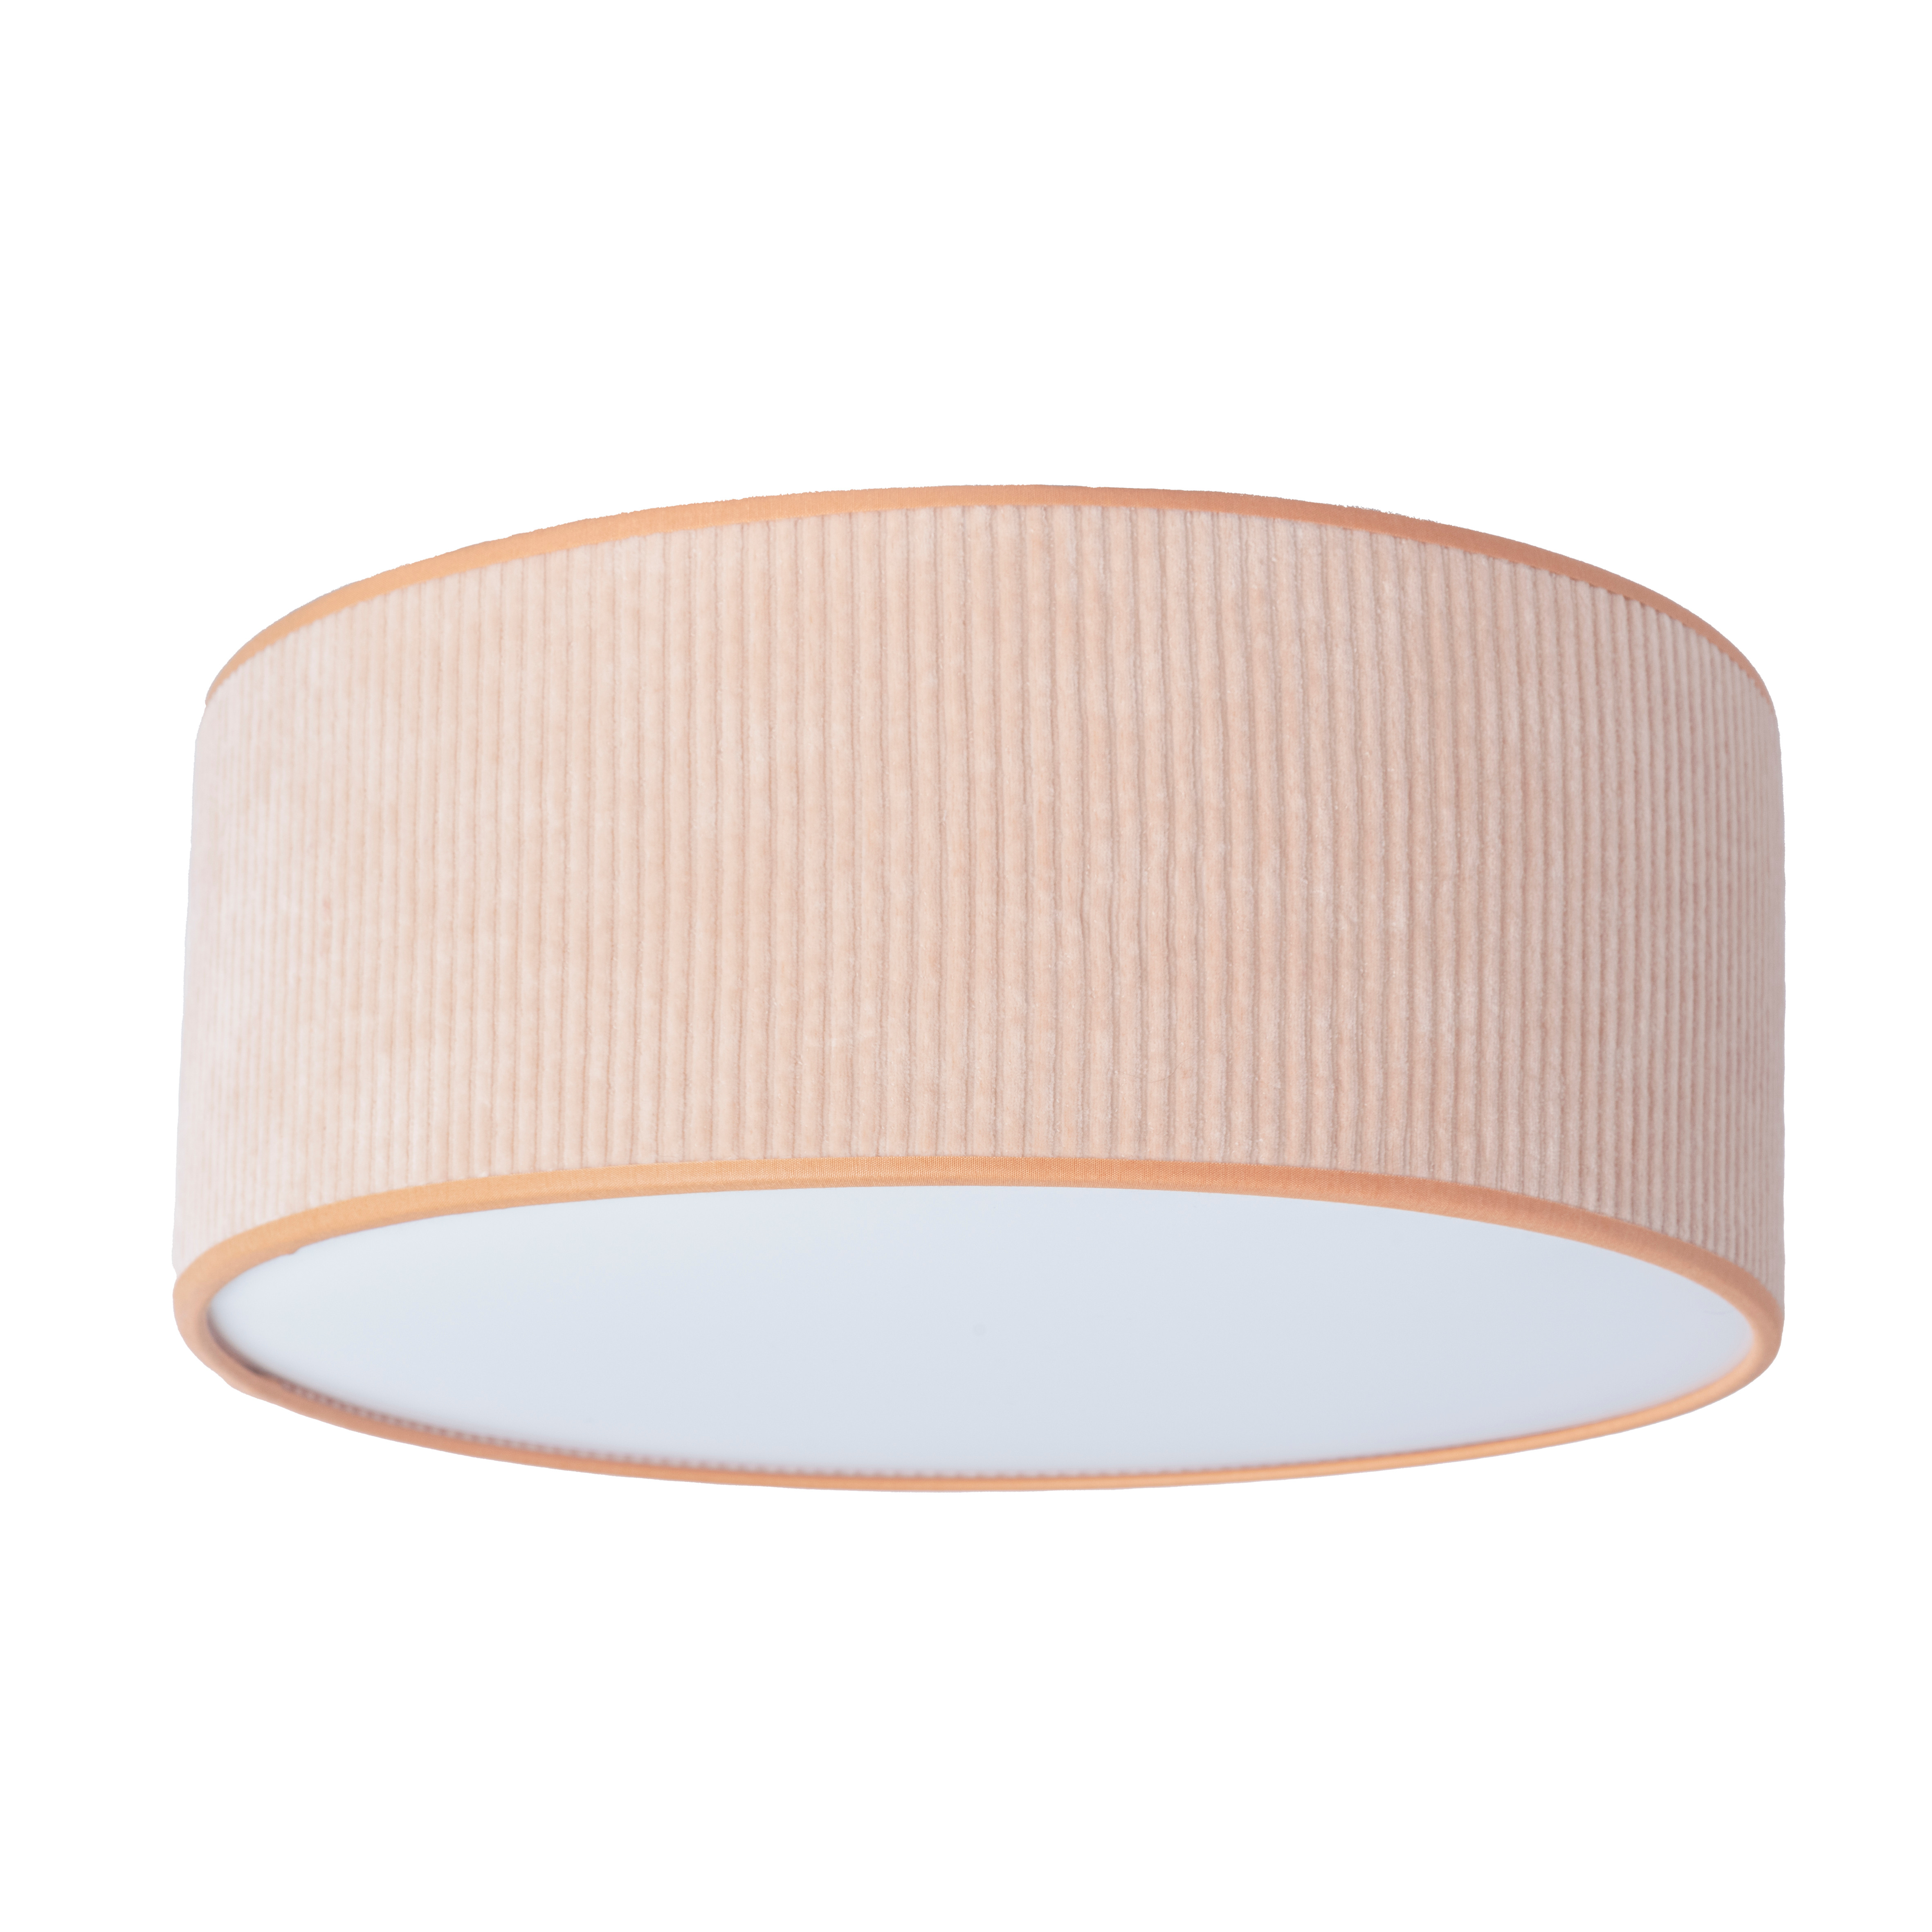 Ceiling lamp Sense peach - Ø35 cm